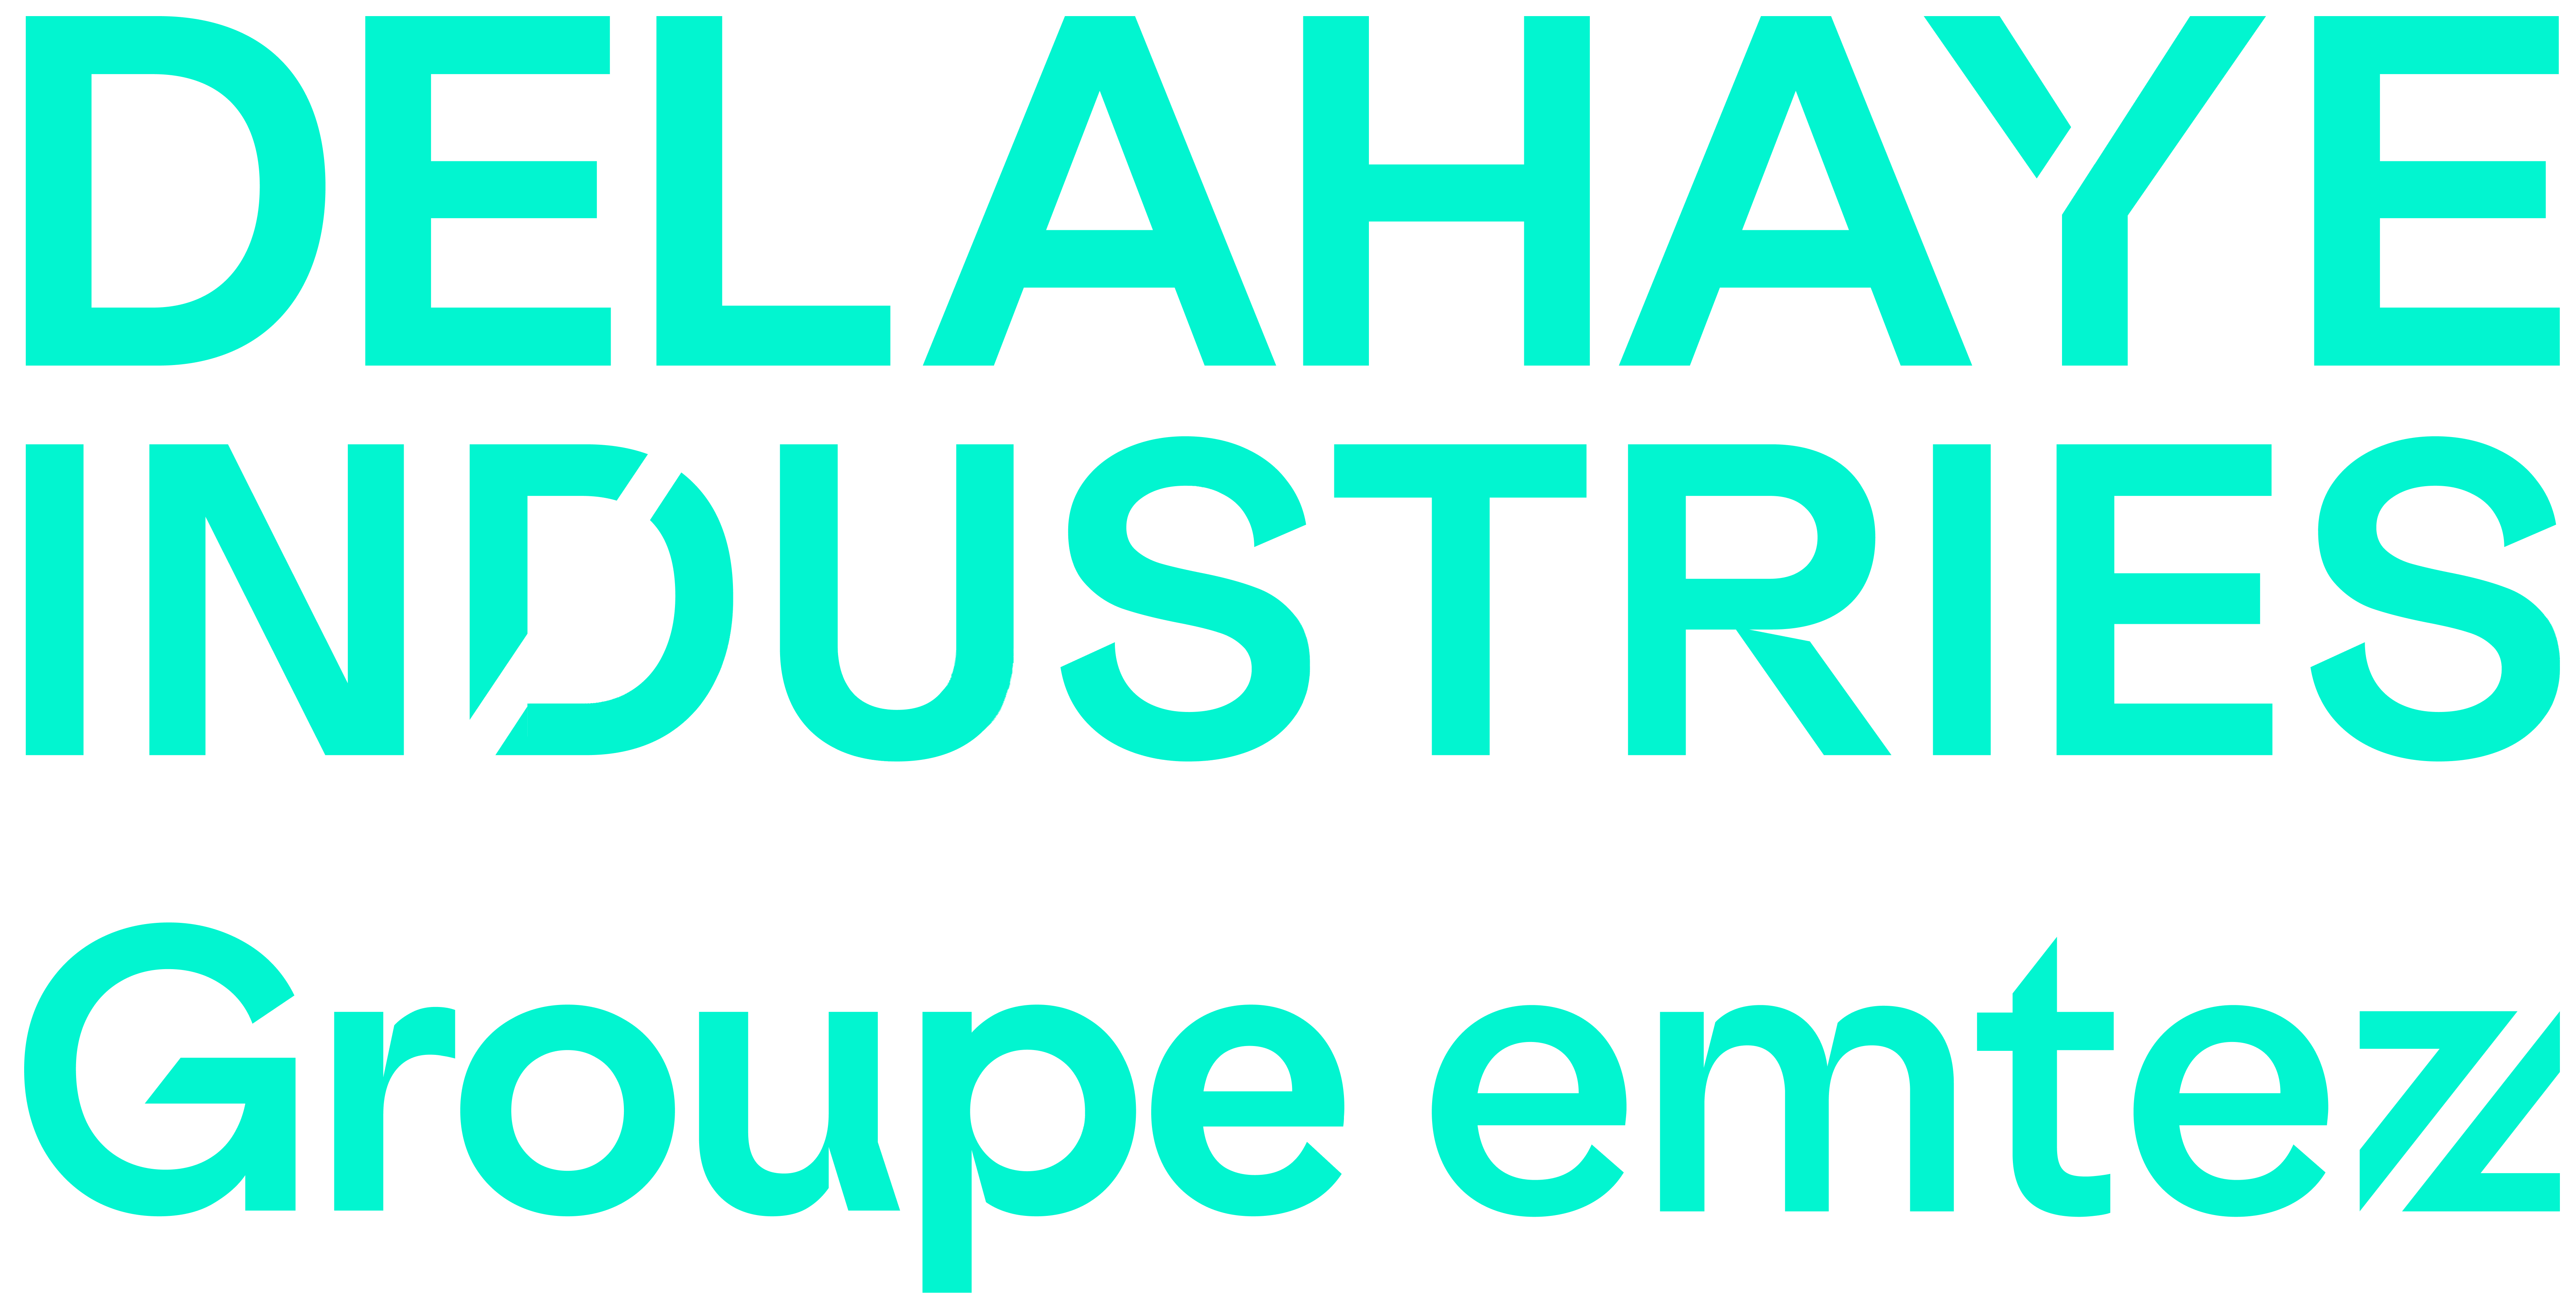 Delahaye Industries logo